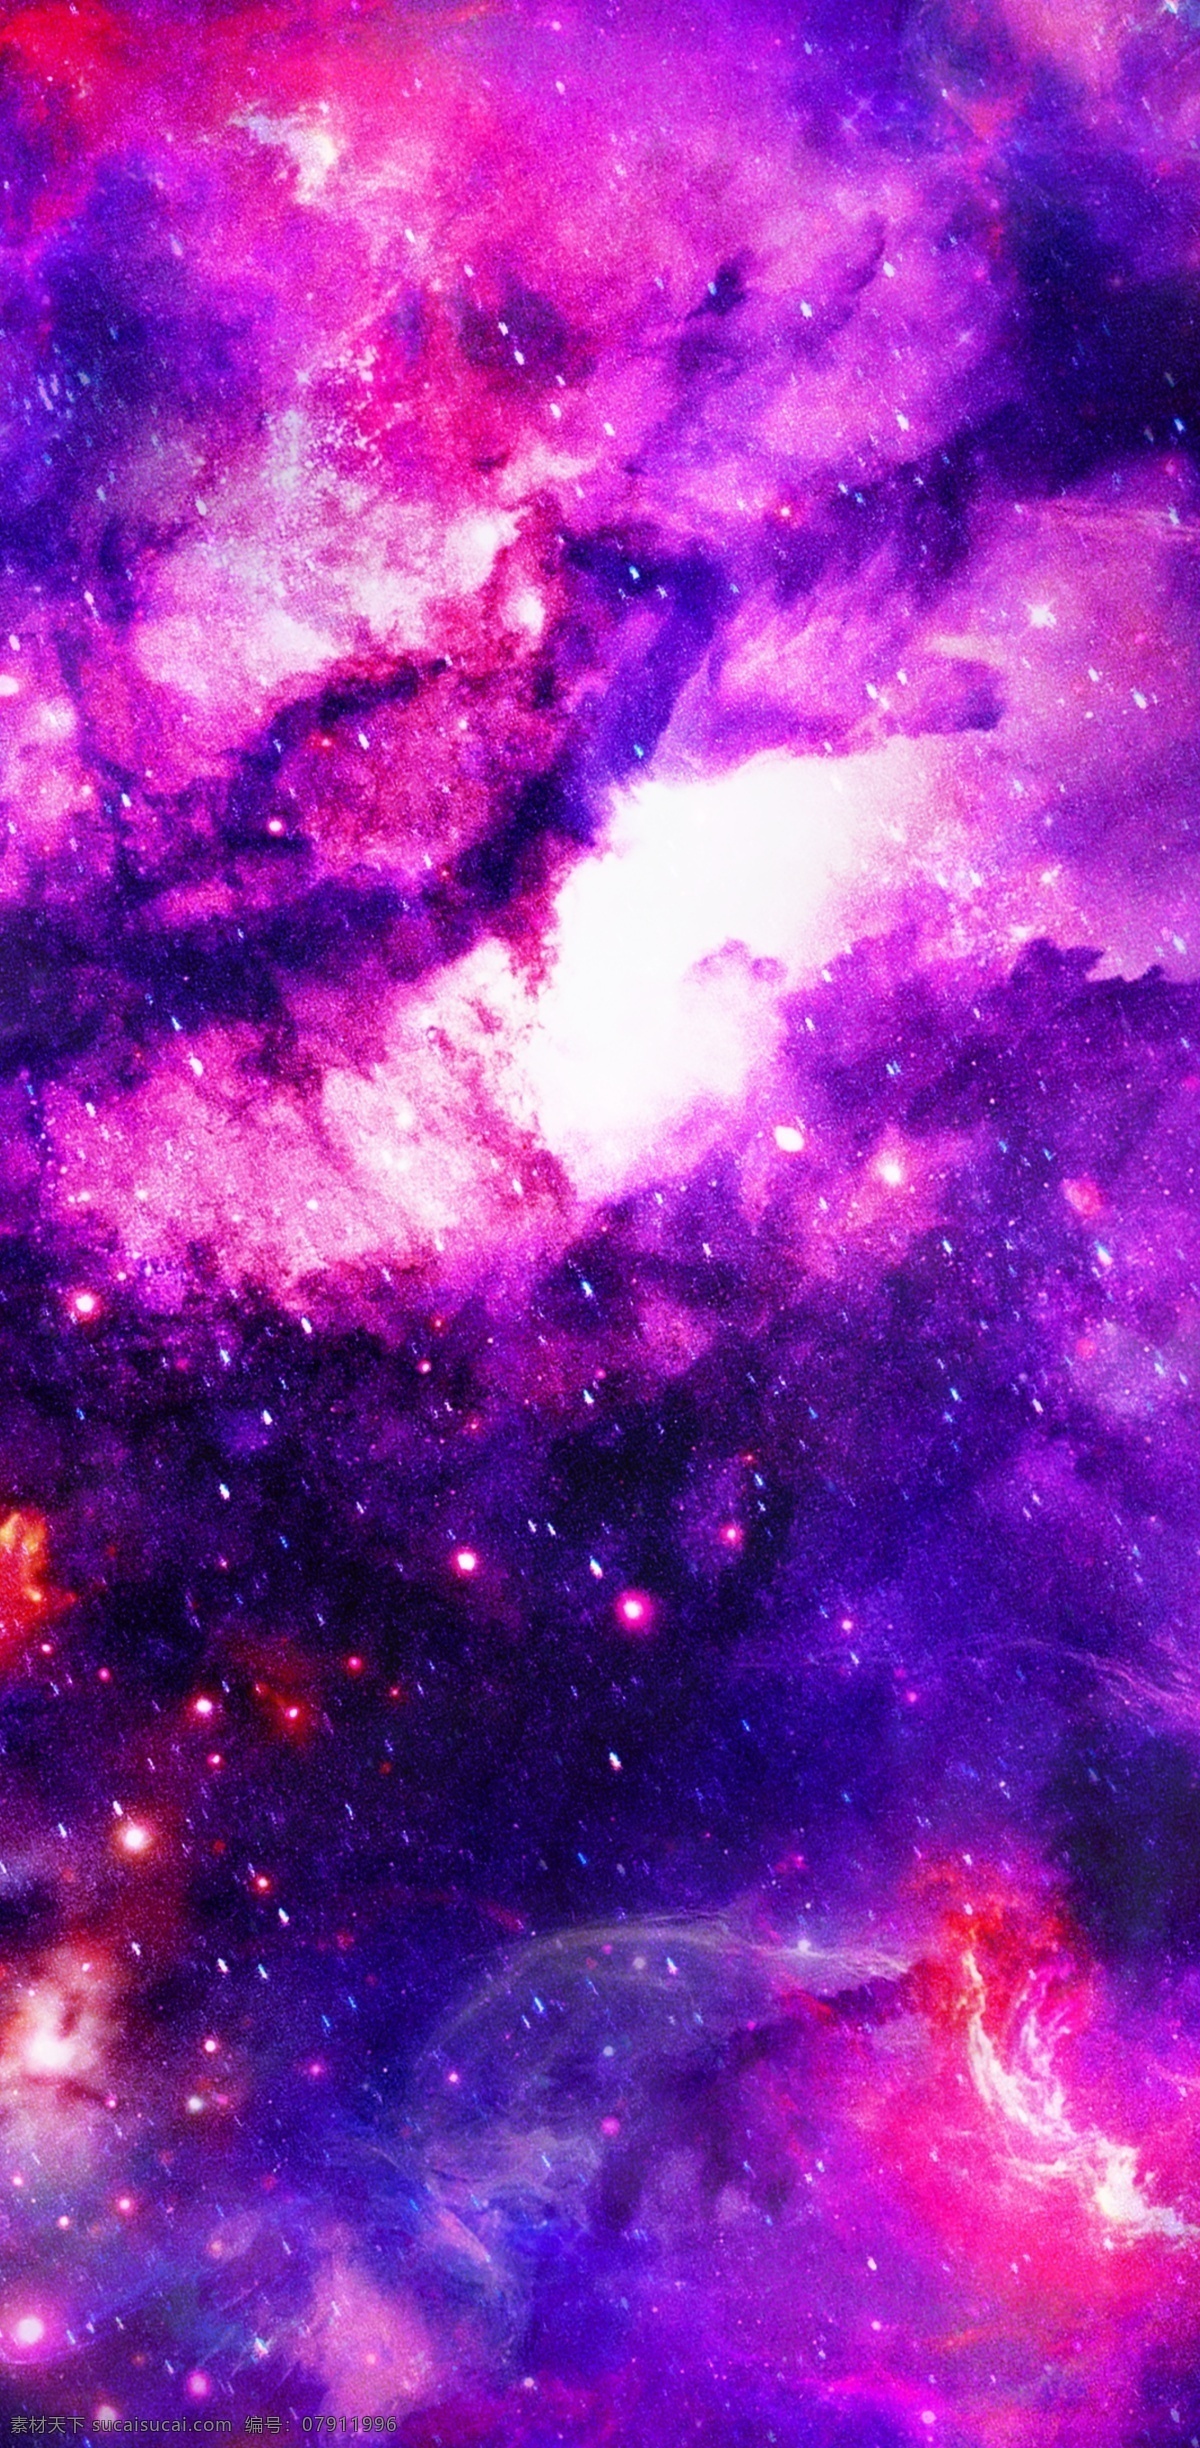 原创 炫彩 缤纷 科技 云端 紫色 迷雾 星空 手机壳 春夏 唯美 大气 幻彩 电子机械包装